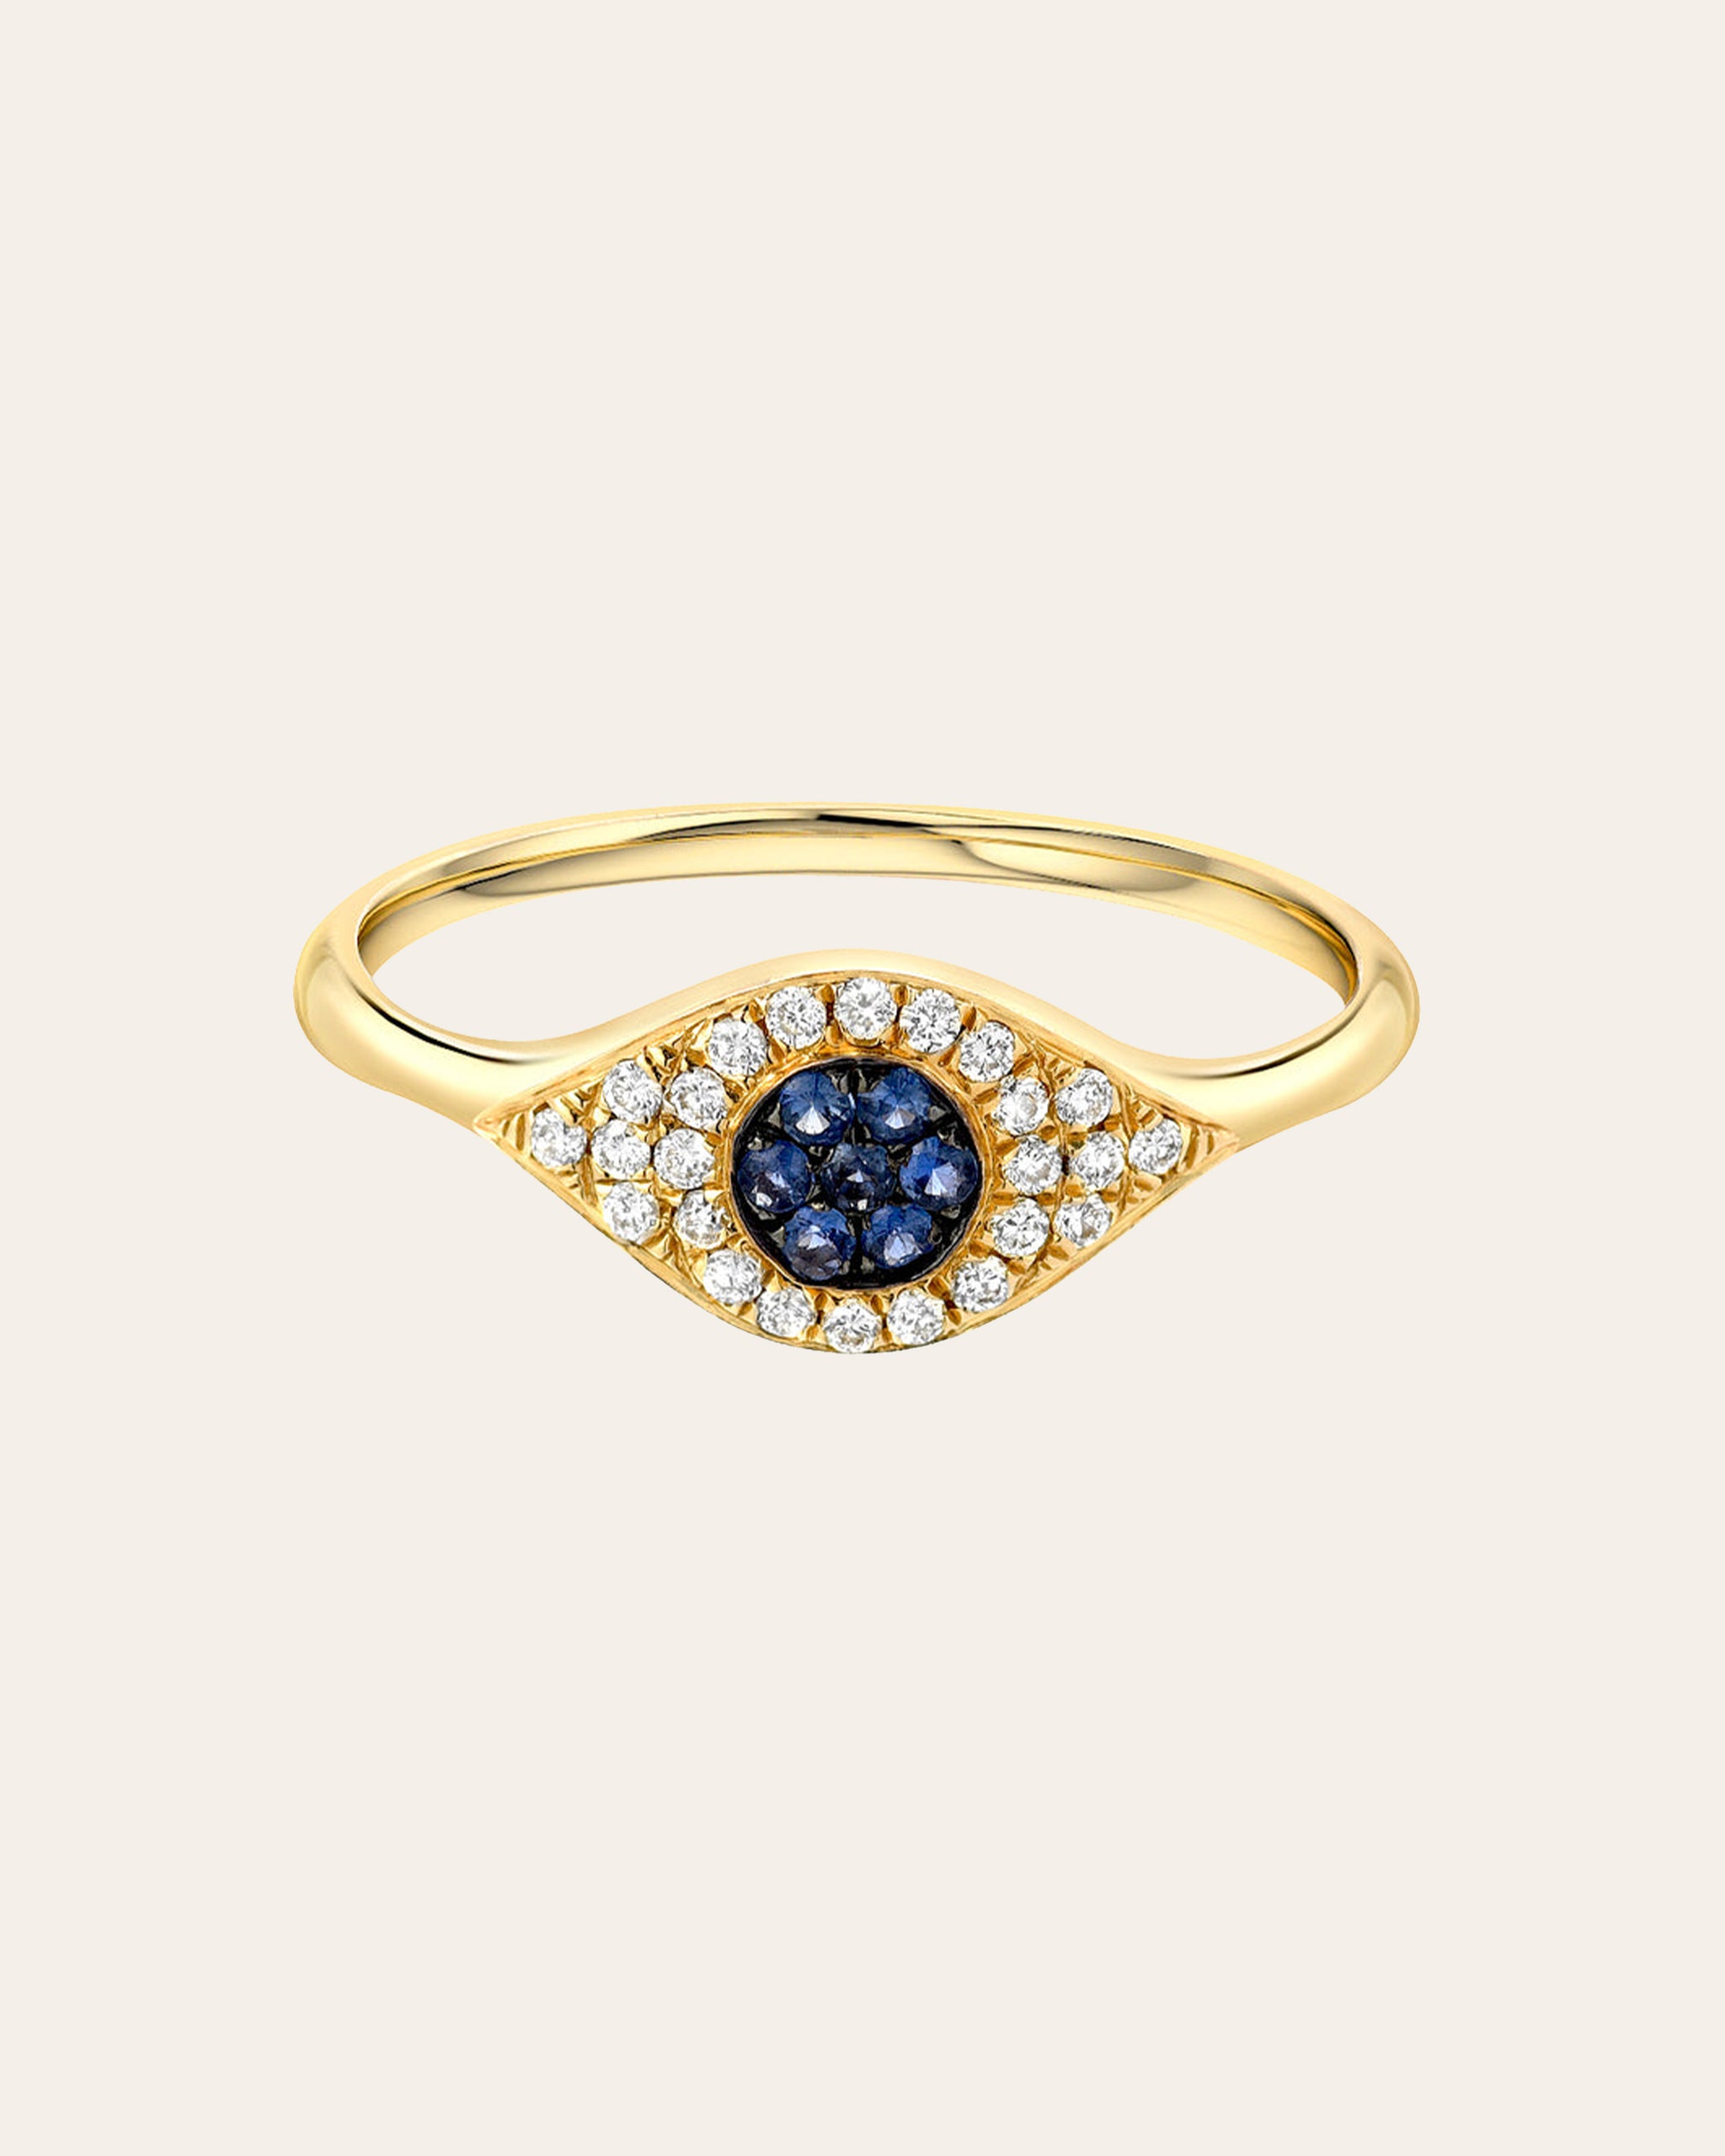 Evil Eye Ring, Evil Eye Ring Rose Gold, Protective Ring, All Seeing Eye Ring,  Rose Gold Wrap Ring, Dainty Circle Ring, Turkish Jewelry - Etsy